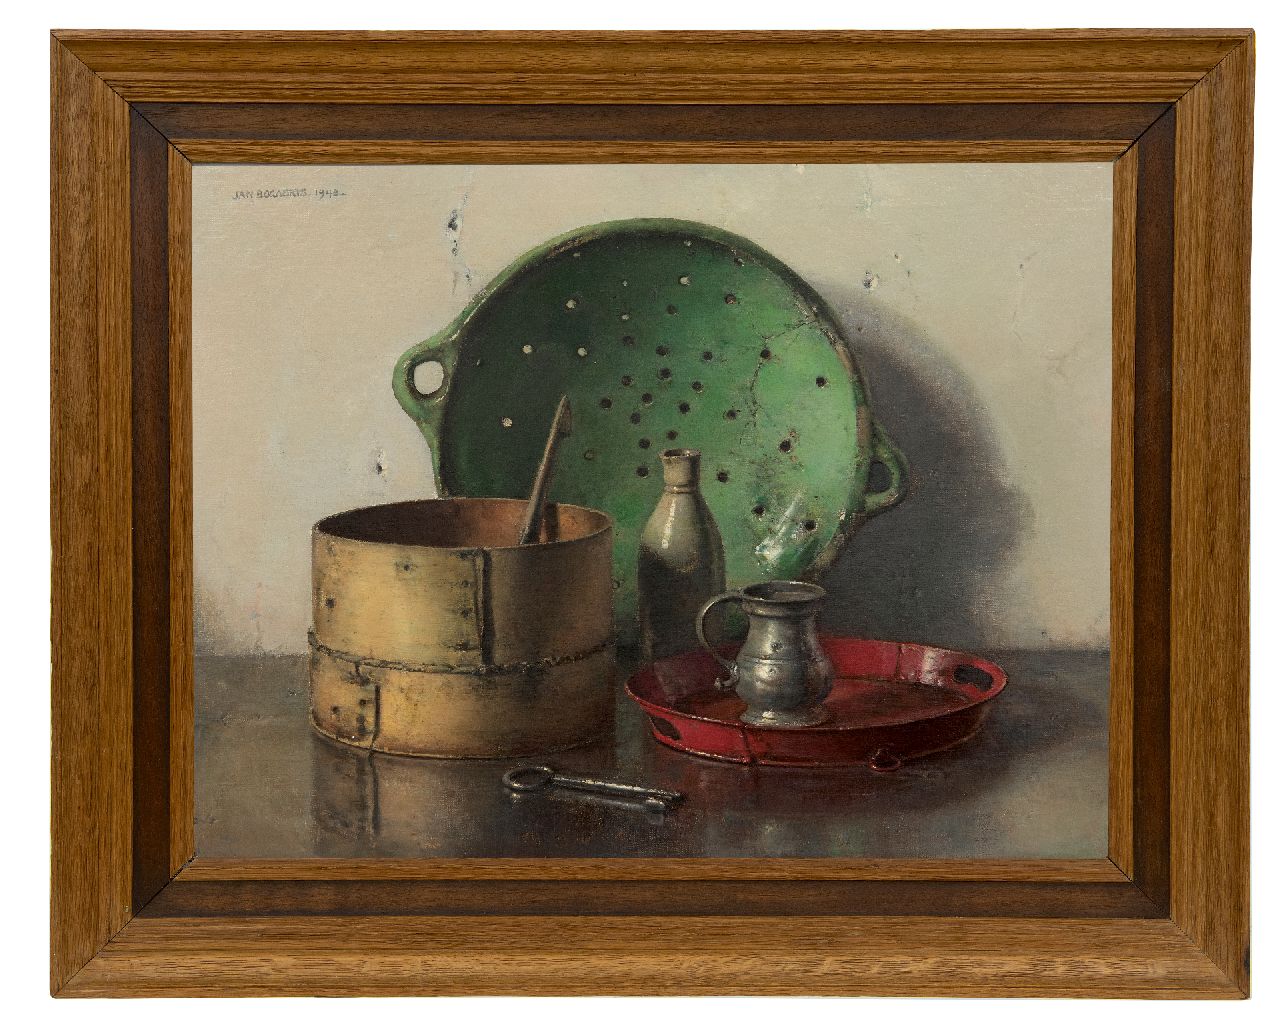 Bogaerts J.J.M.  | Johannes Jacobus Maria 'Jan' Bogaerts, Stilleven met groene zeef, olieverf op doek 50,2 x 66,1 cm, gesigneerd linksboven en gedateerd 1948